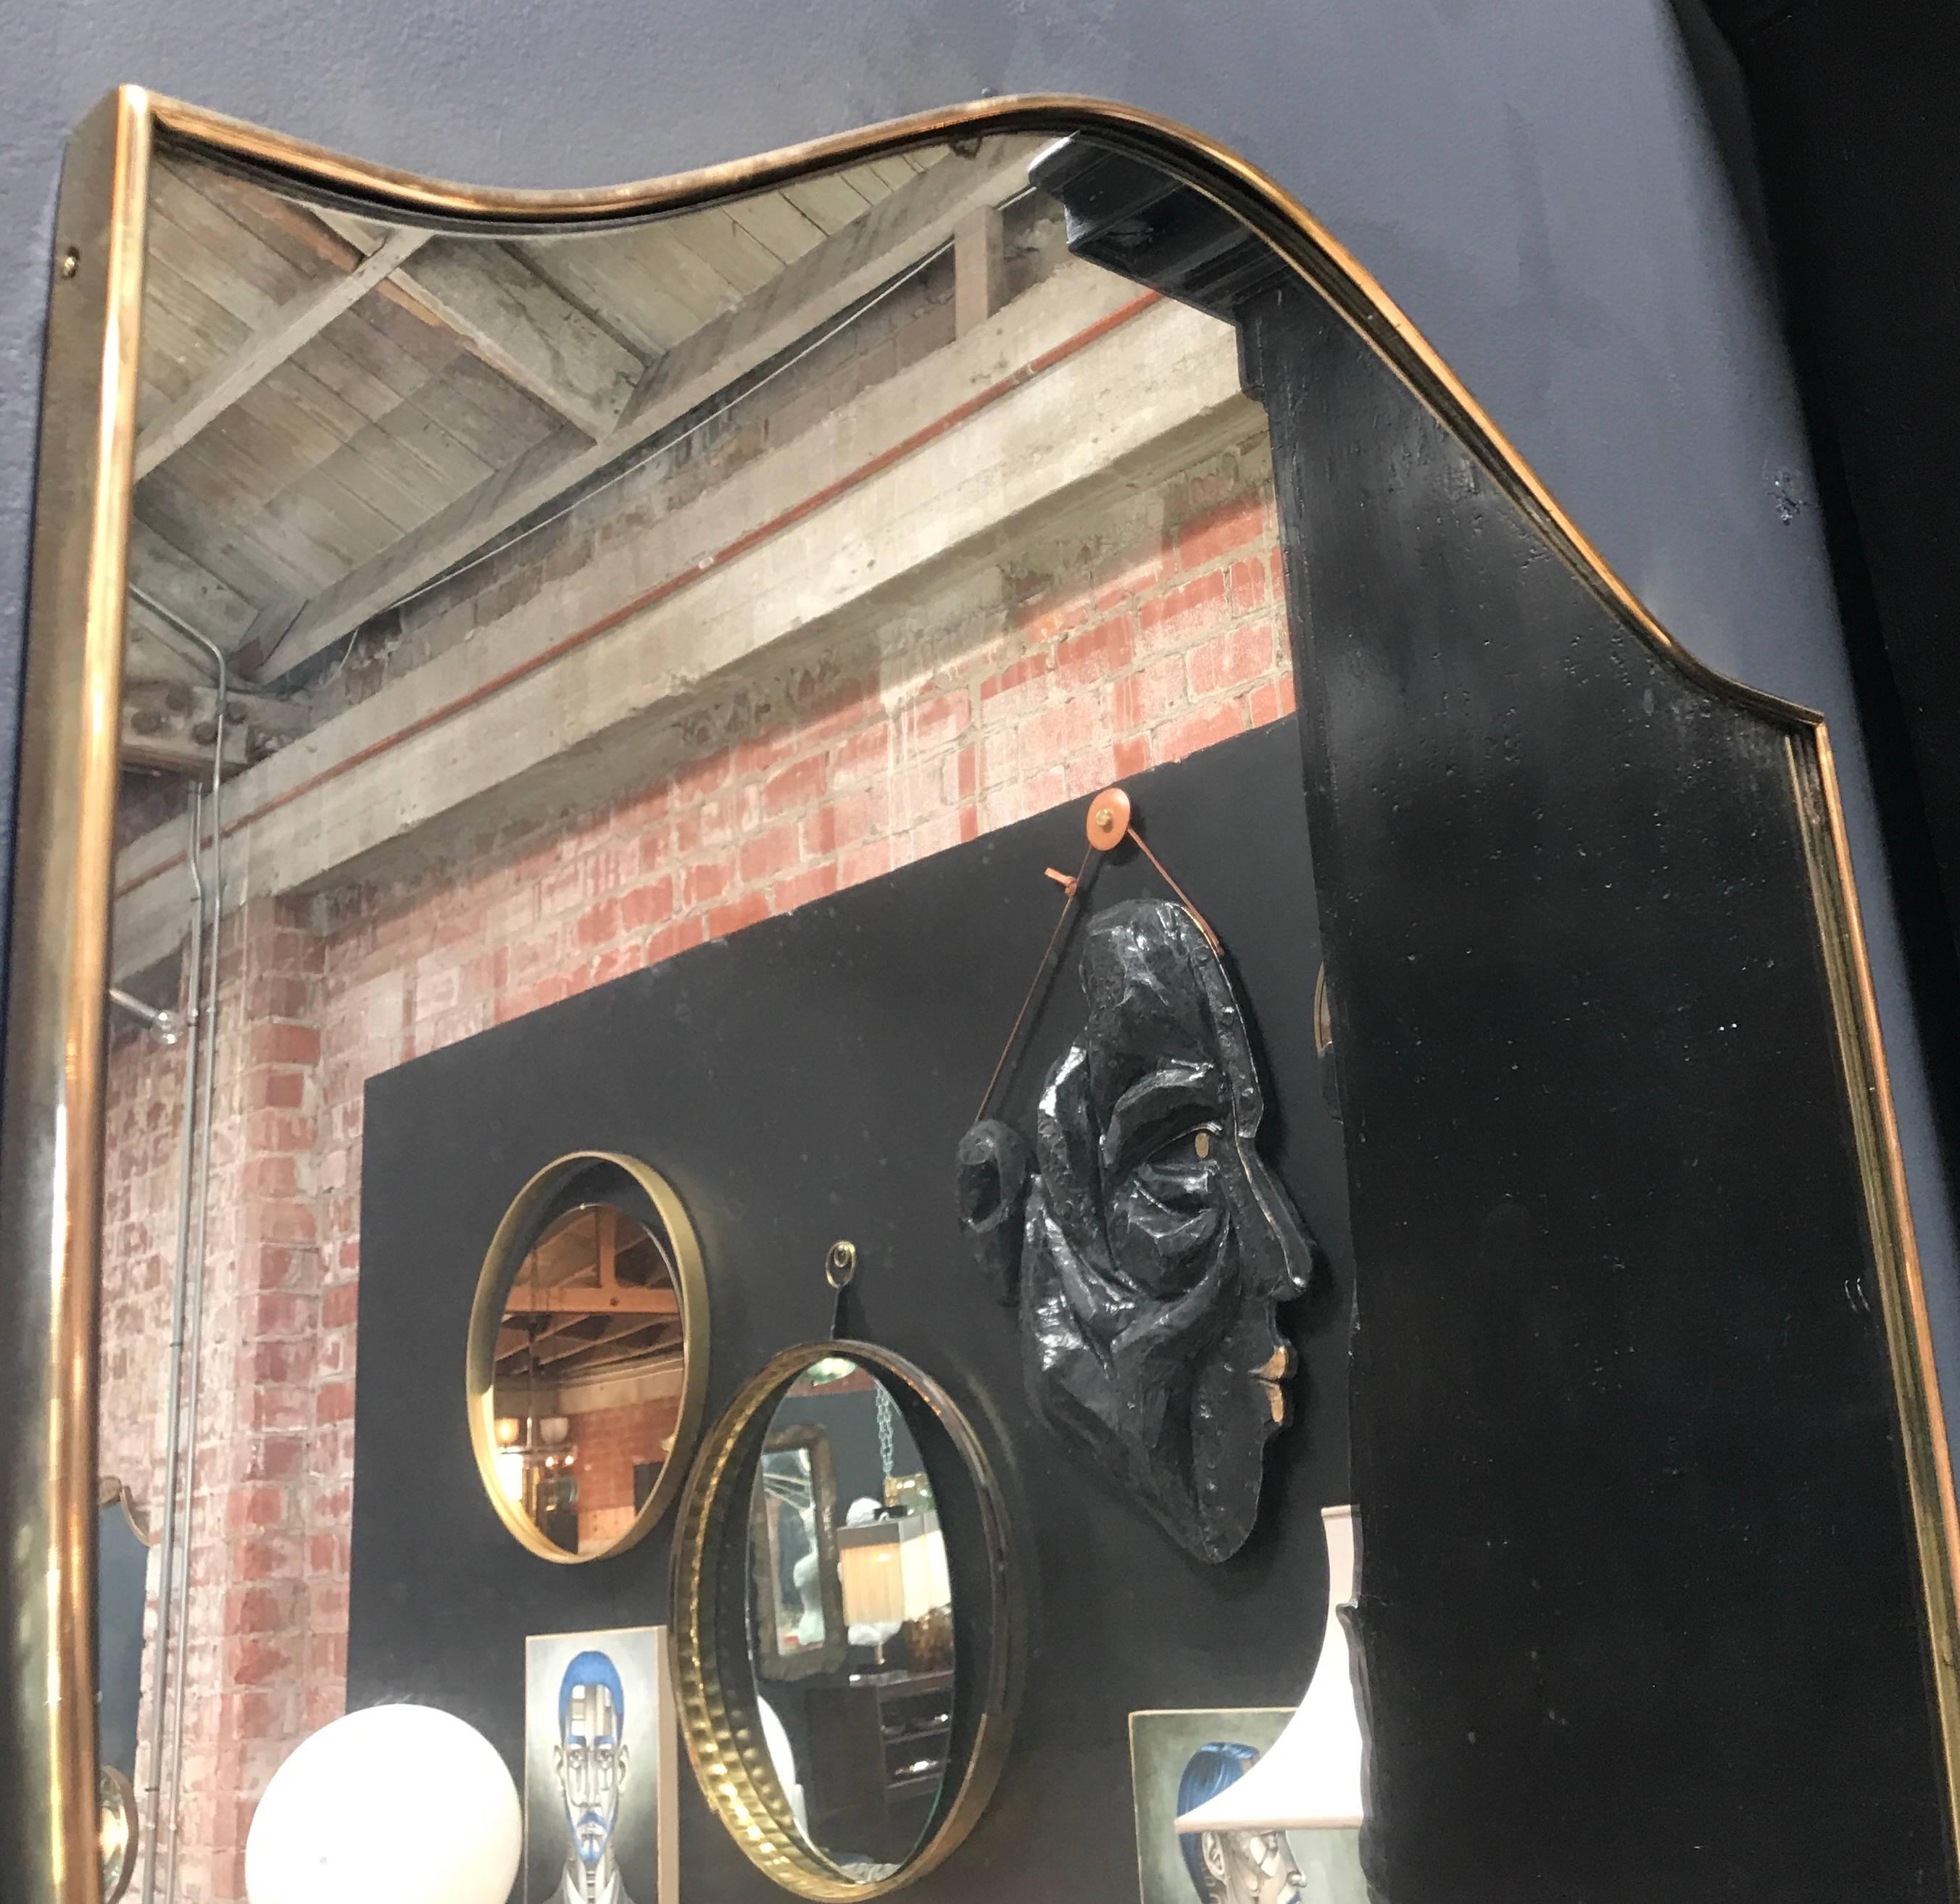 Mid-20th Century Italian Brass Shield Shaped Framed Mirror